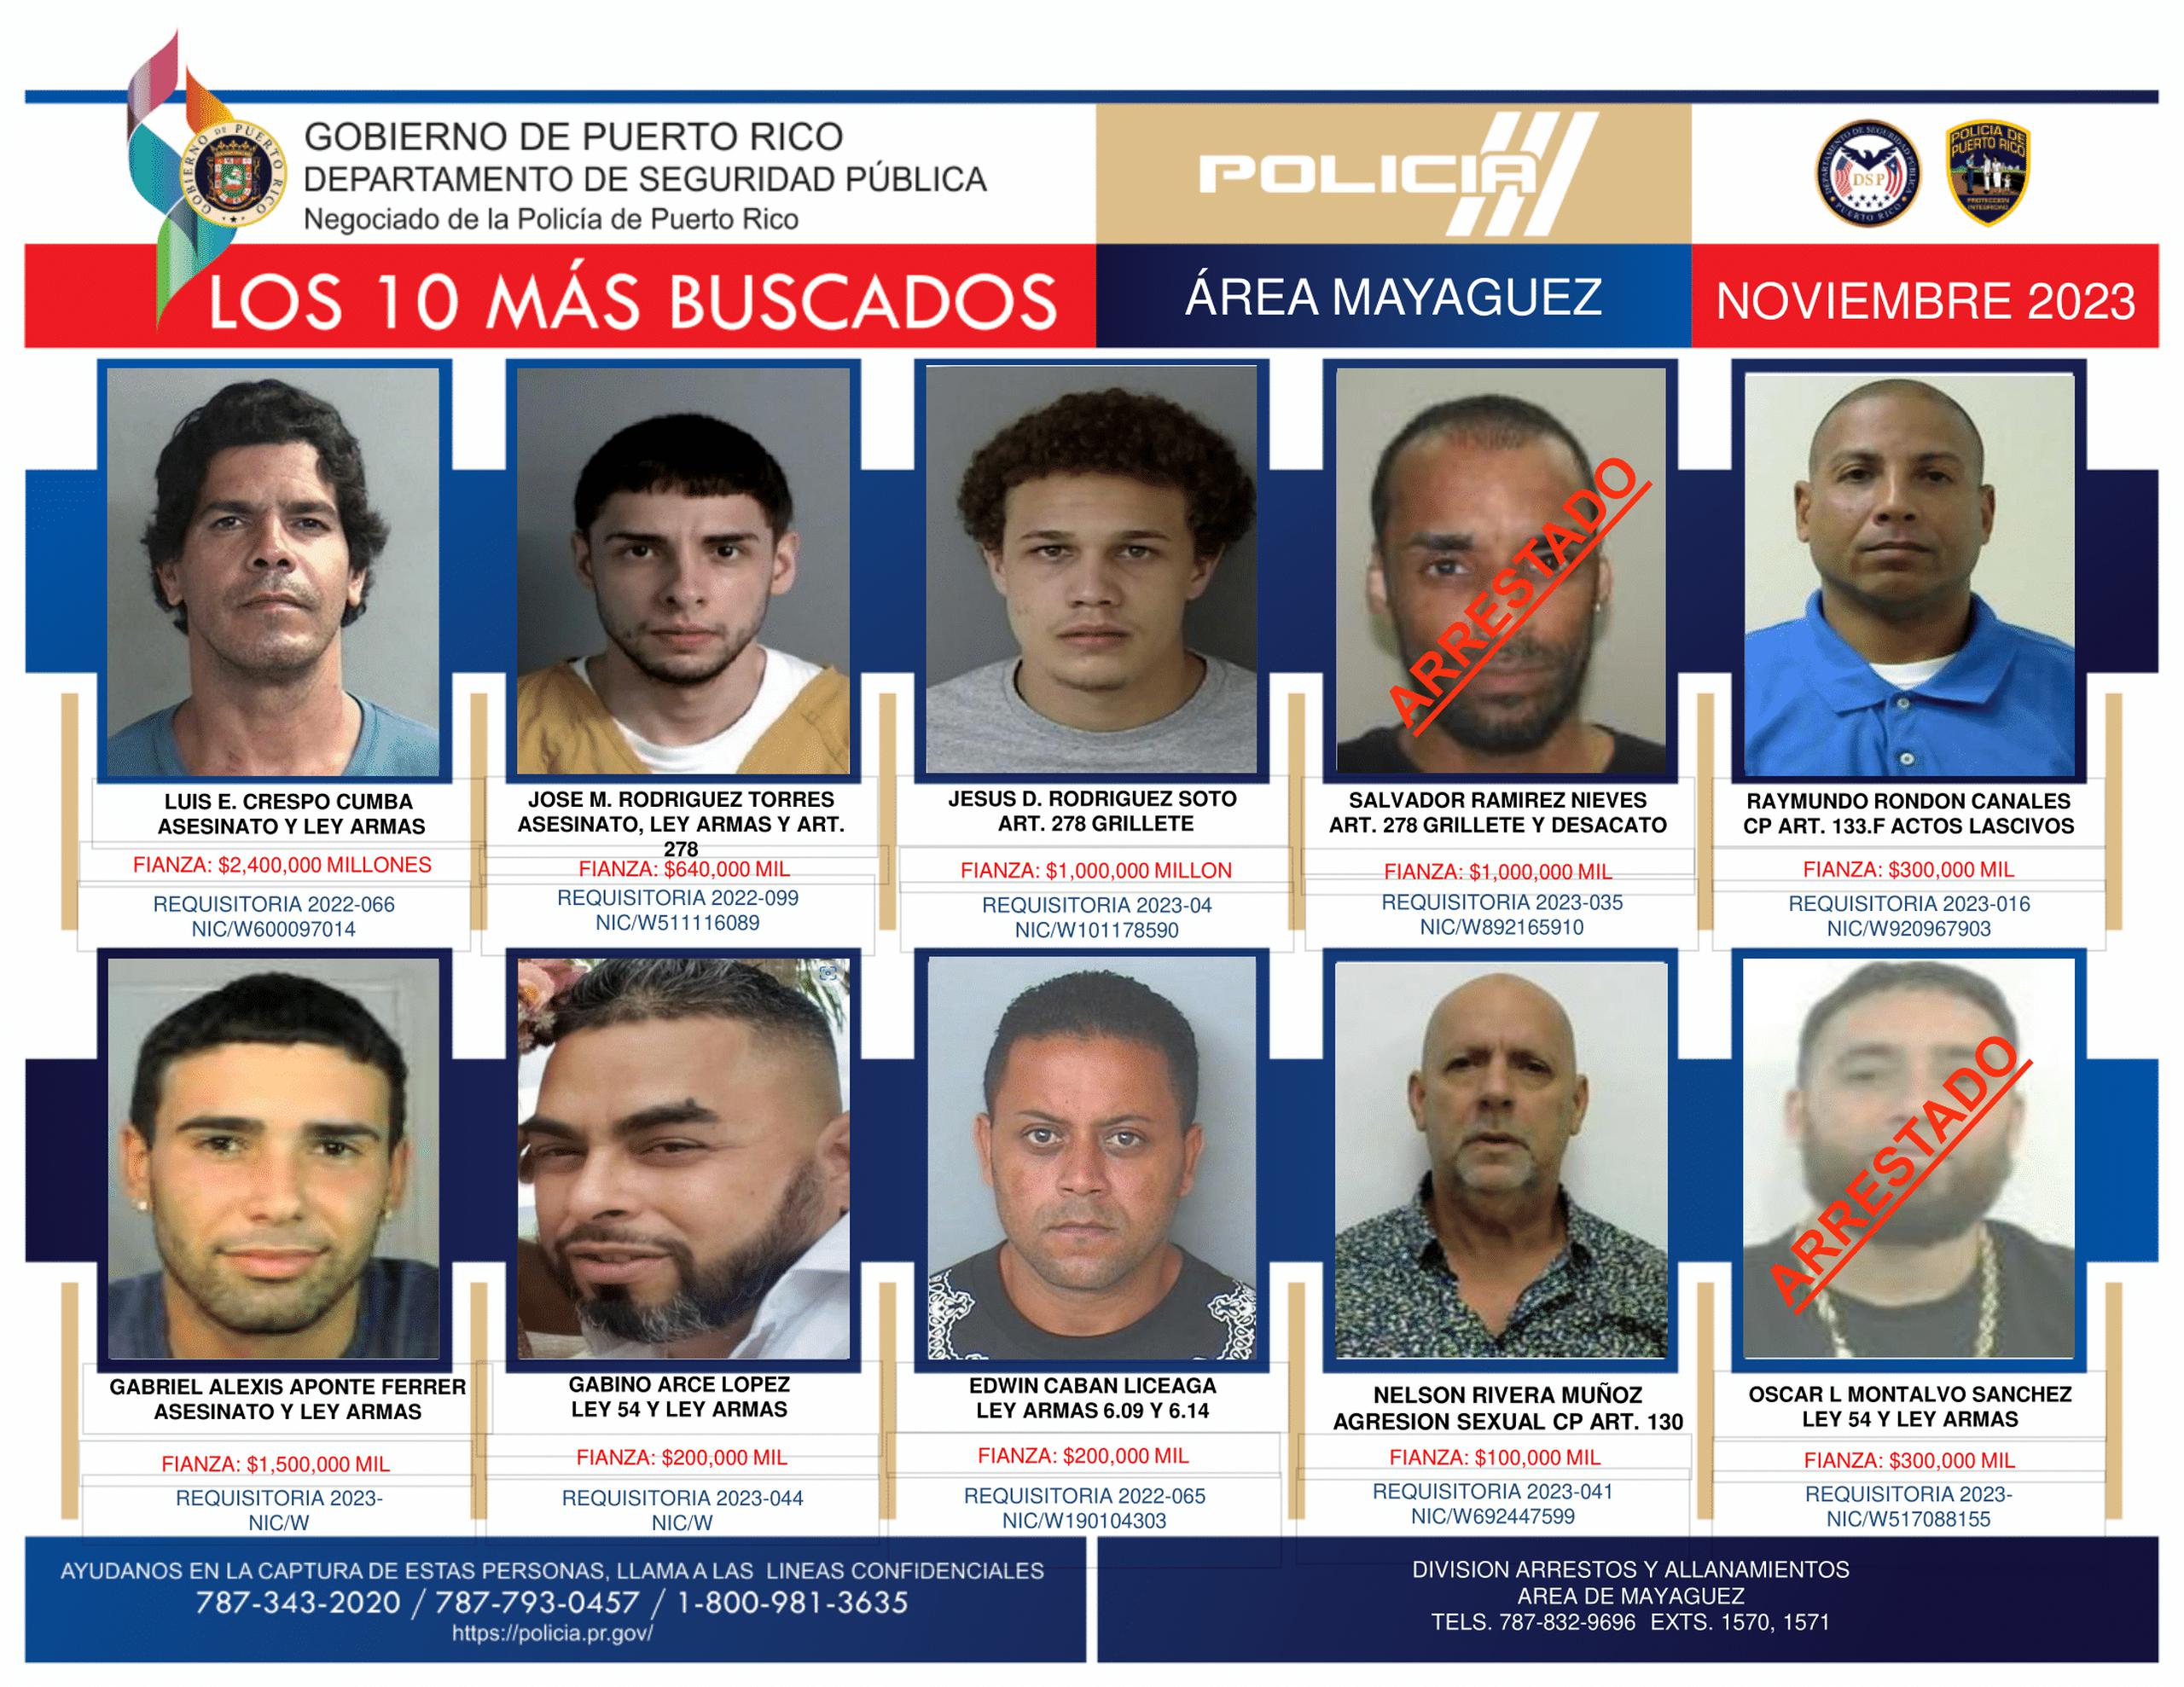 Gabriel Alexis Aponte Ferrer, sospechoso de asesinar a Jan Carlos Vázquez Flores, quien era hijo de un policía, figuraba en la lista de los más buscados en la zona policial de Mayagüez.